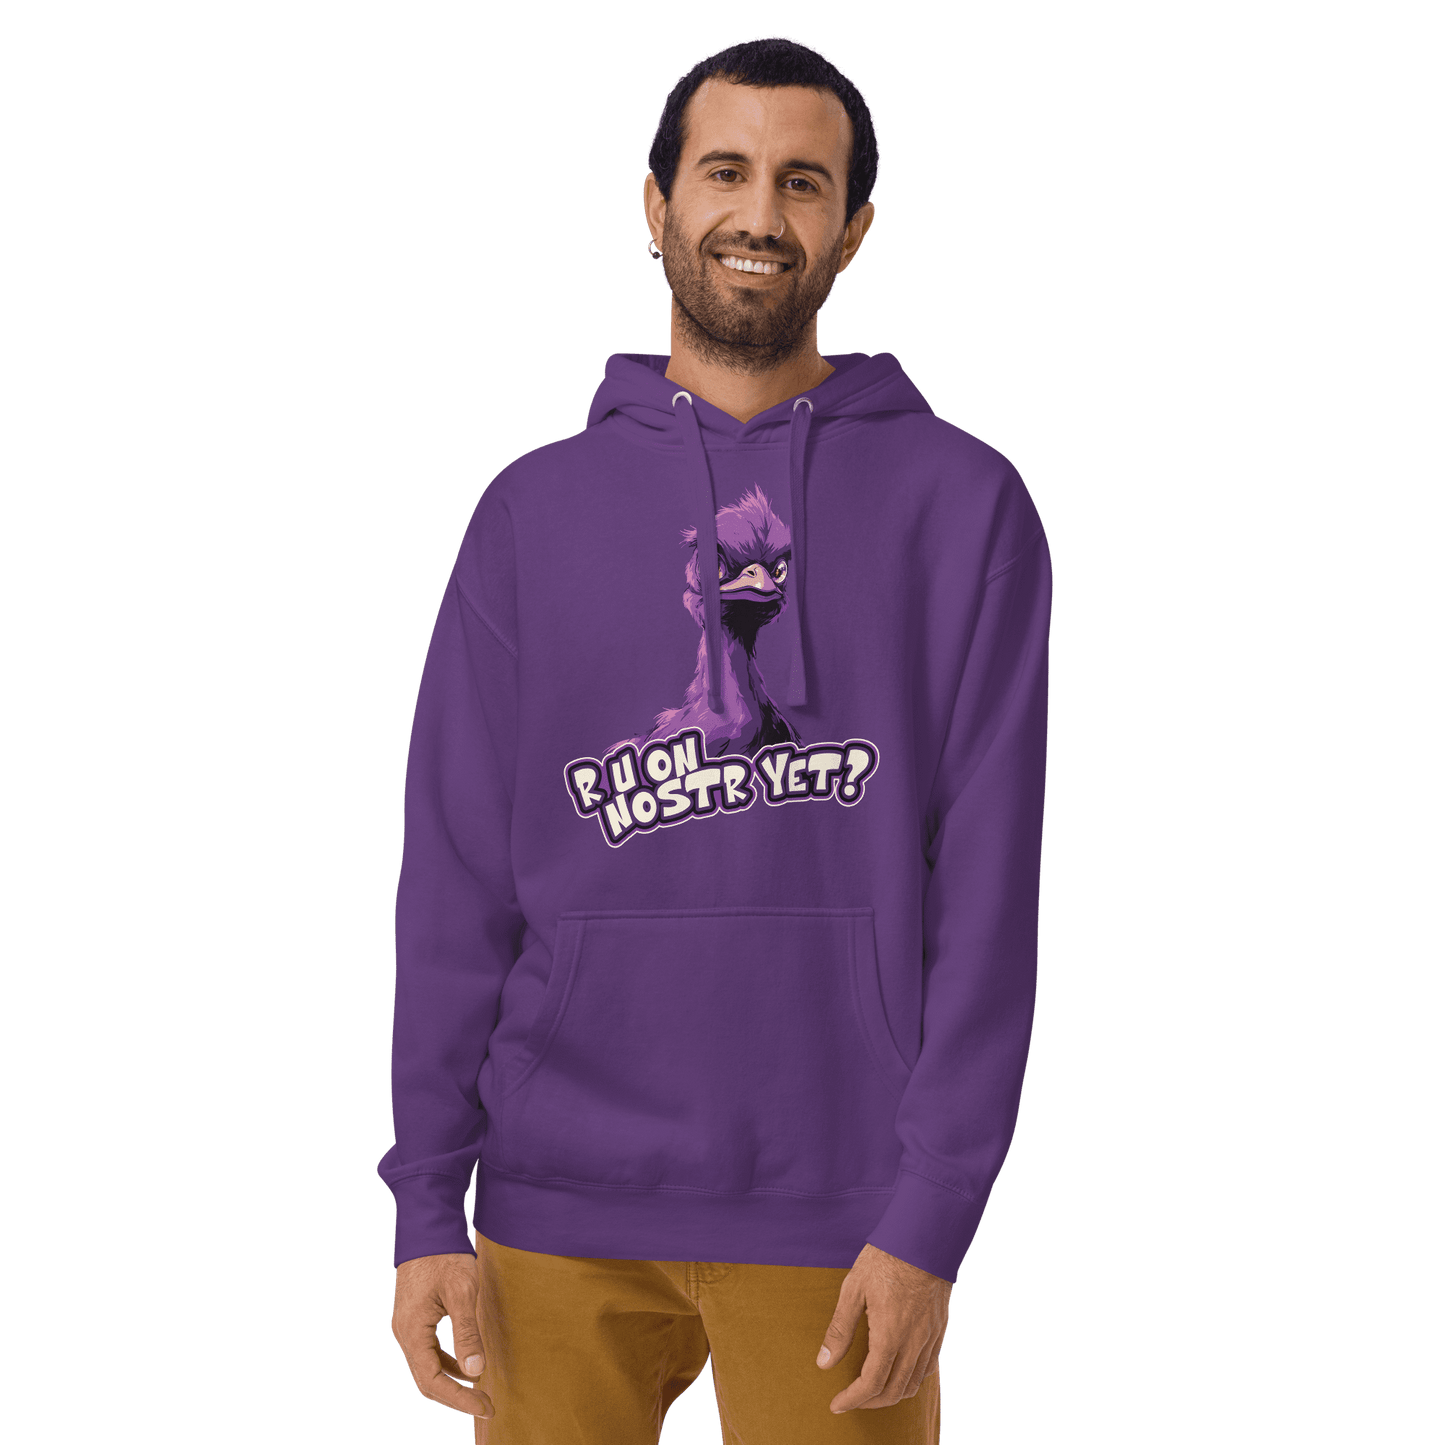 R U On Nostr Yet? | Purple Nostr Hoodie